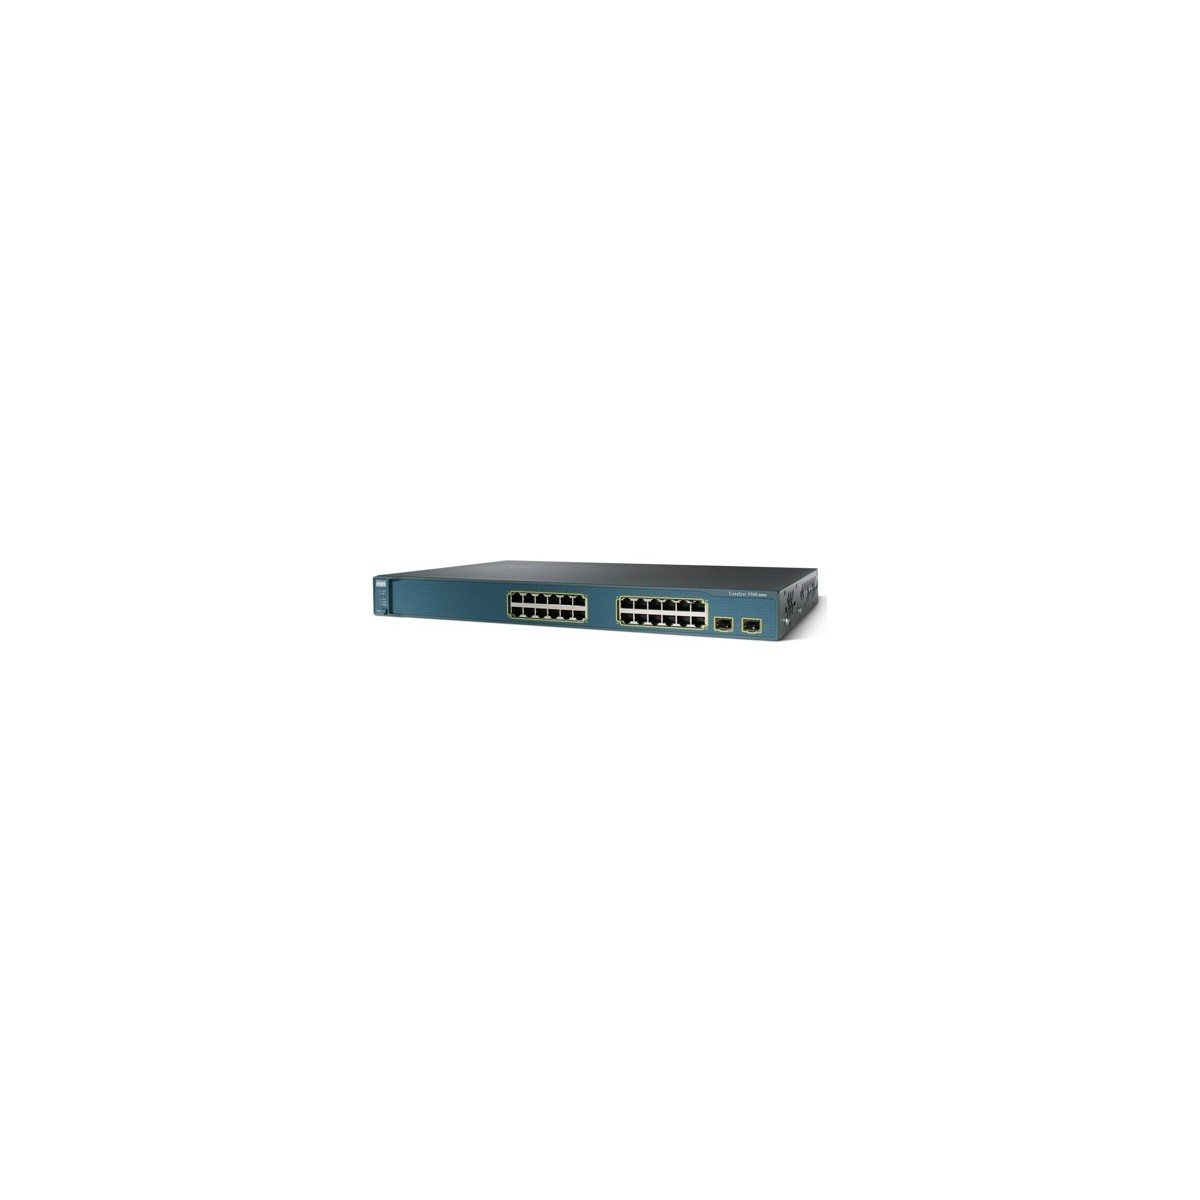 Cisco Catalyst 3560-24TS SMI - Switch - 0.1 Gbps - Amount of ports: 1 U - Wireless Rack module